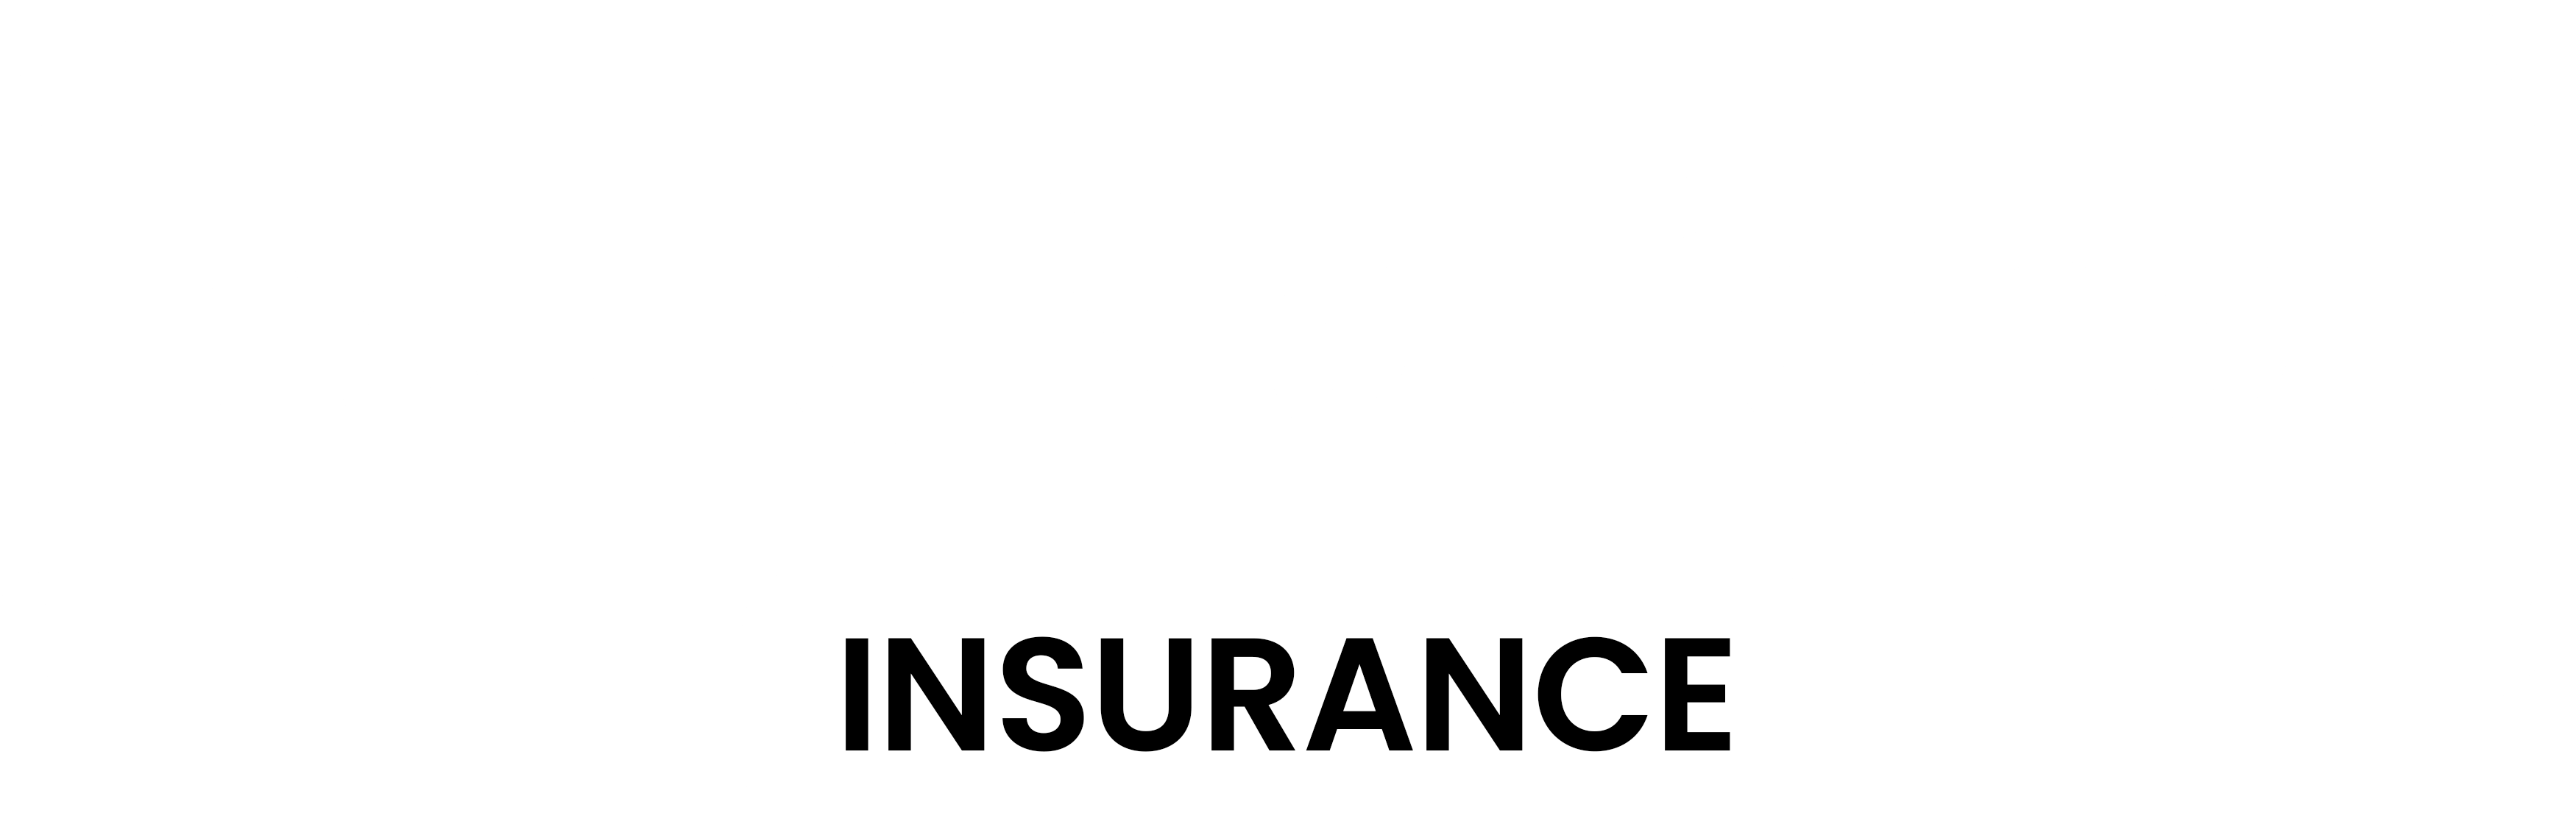 Autonational Insurance, Car Insurance from the U.K Breakdown specialist!